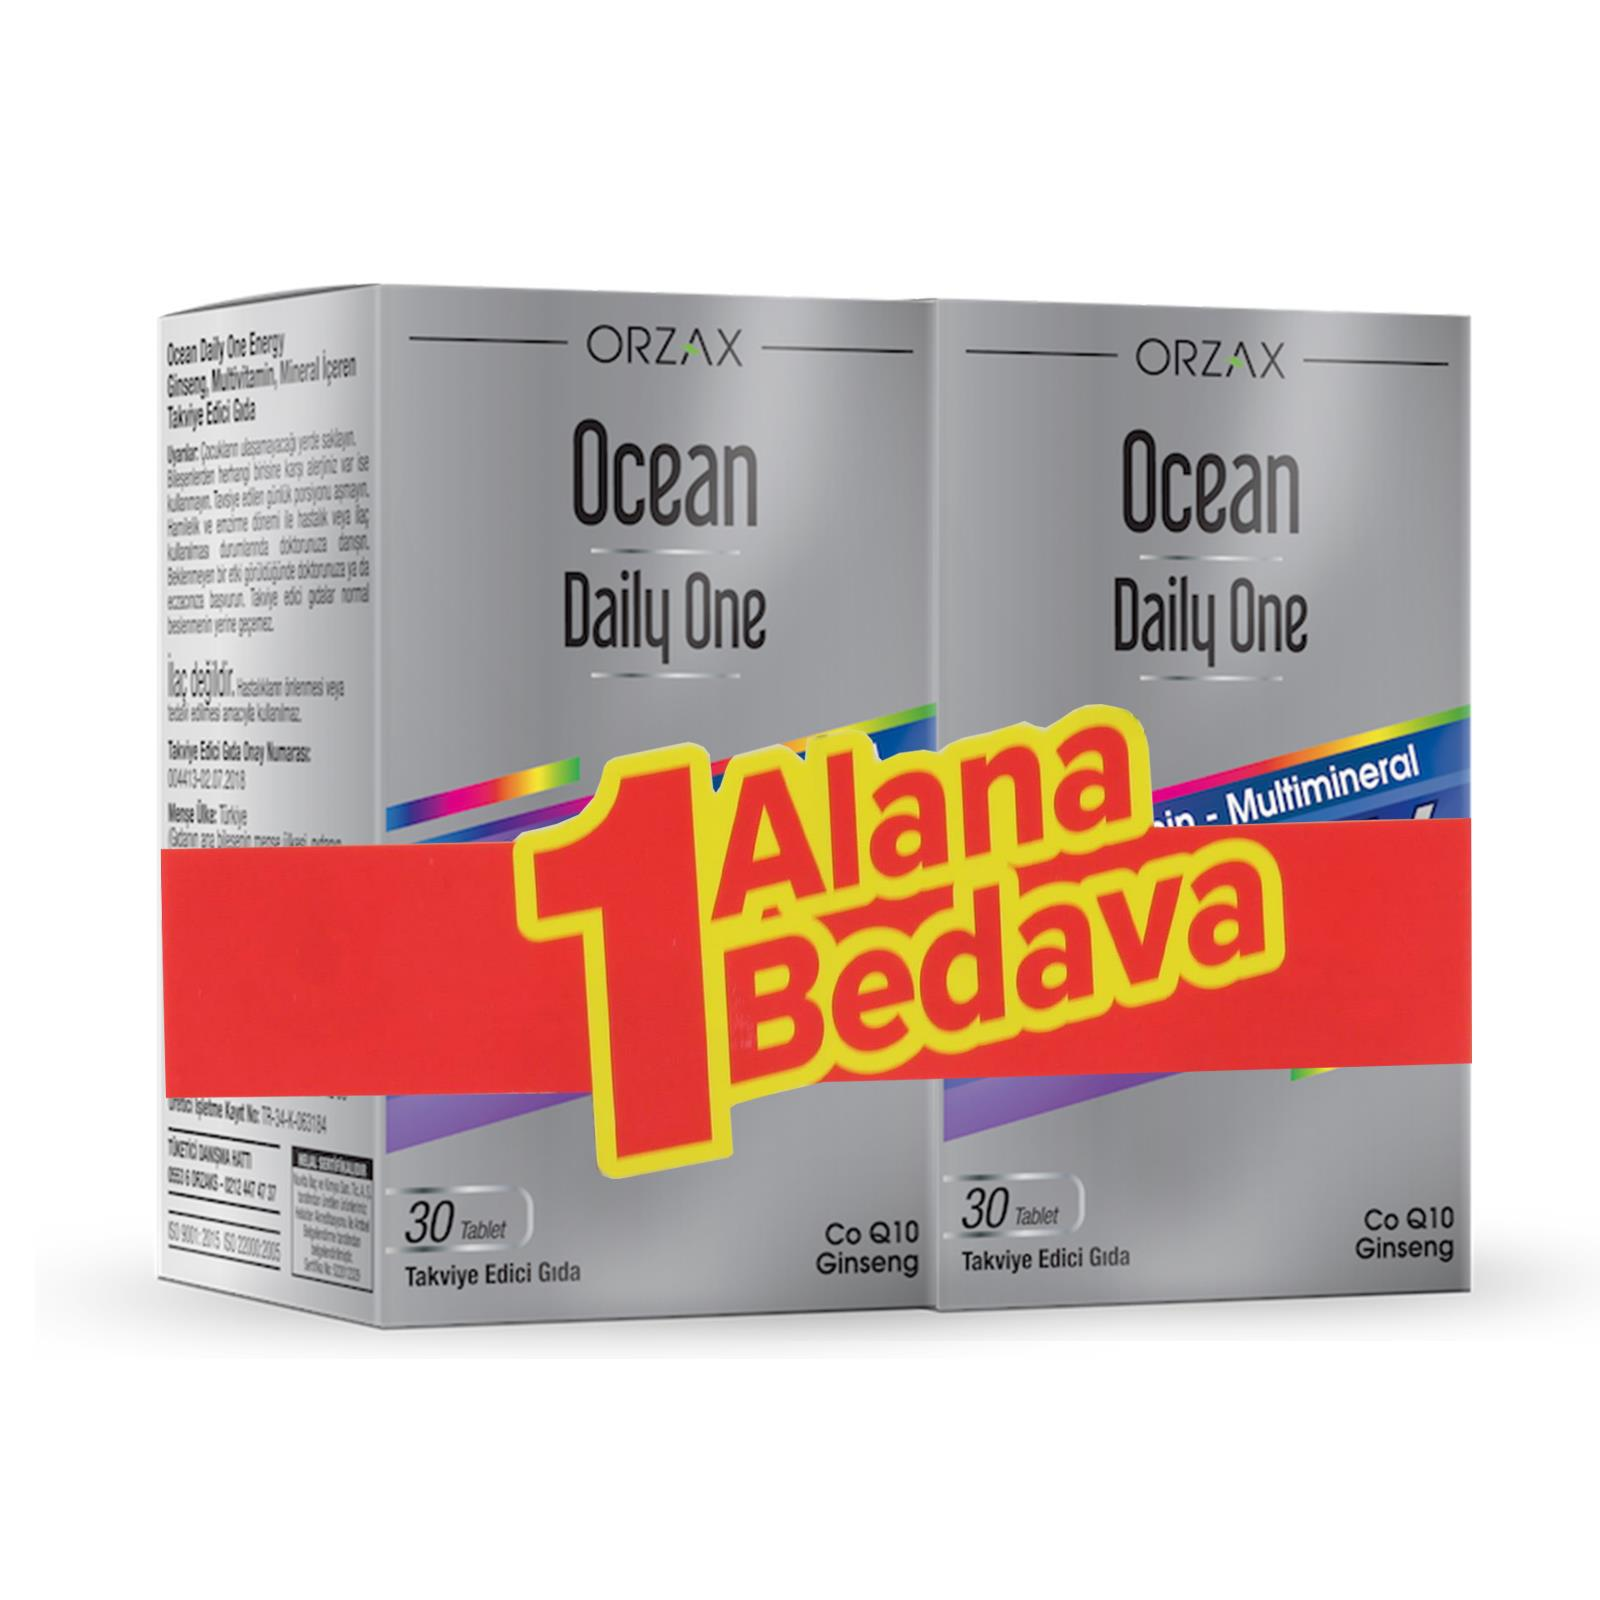 Ocean Daily One Energy 30 Tablet - 1 Alana 1 Bedava